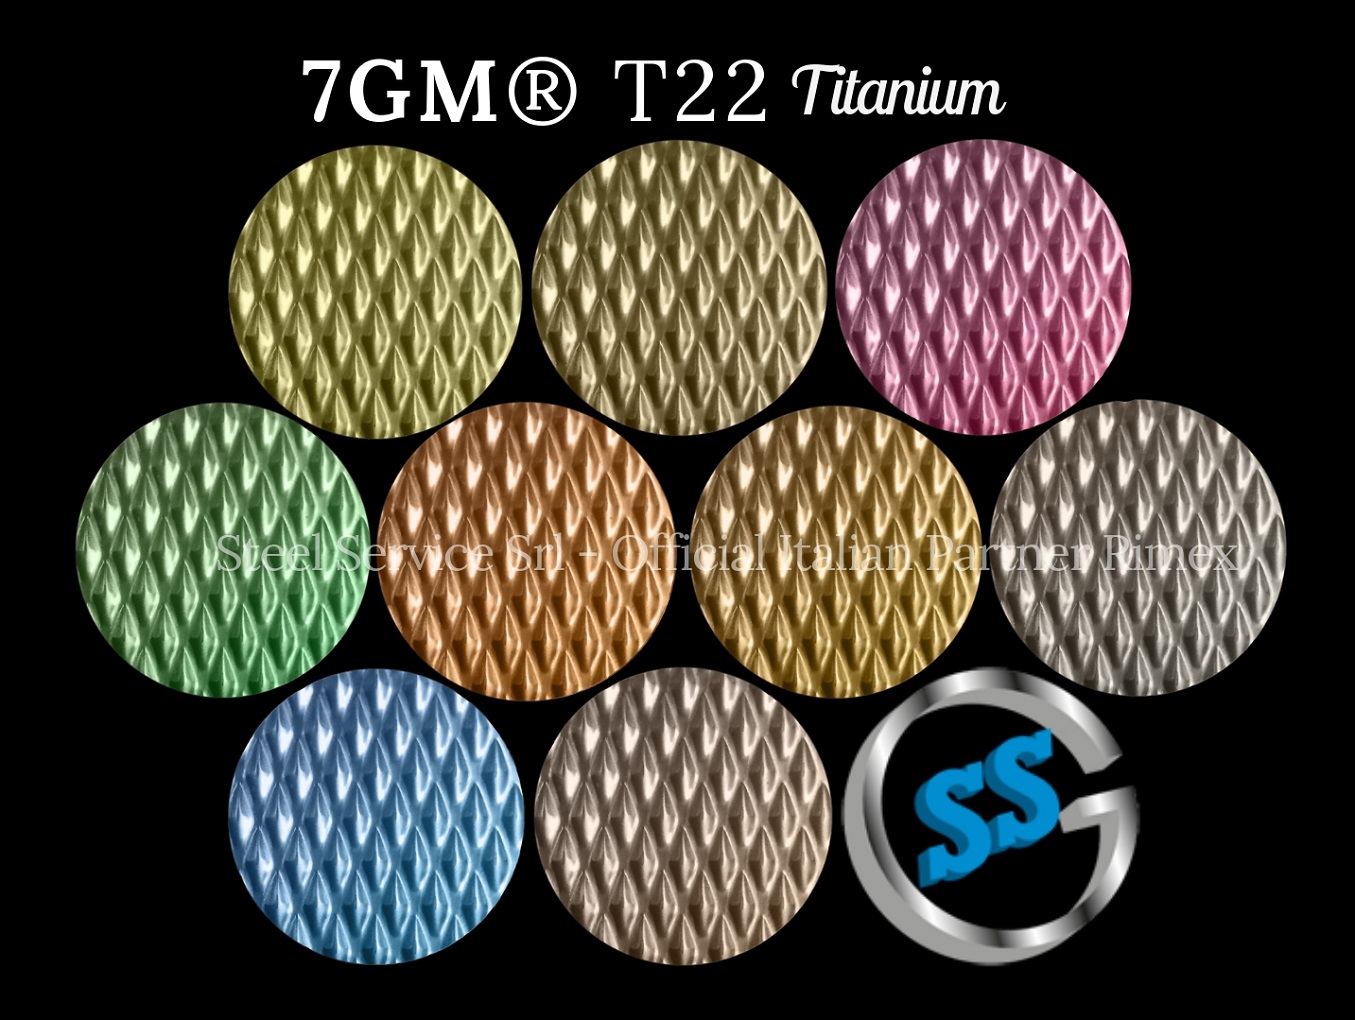 Lamiere bugnate 7GM colorate, Palette varianti colorate inox T22 Titanium delle lamiere inox 7GM , inox rigidizzato 7GM, inox 7WL